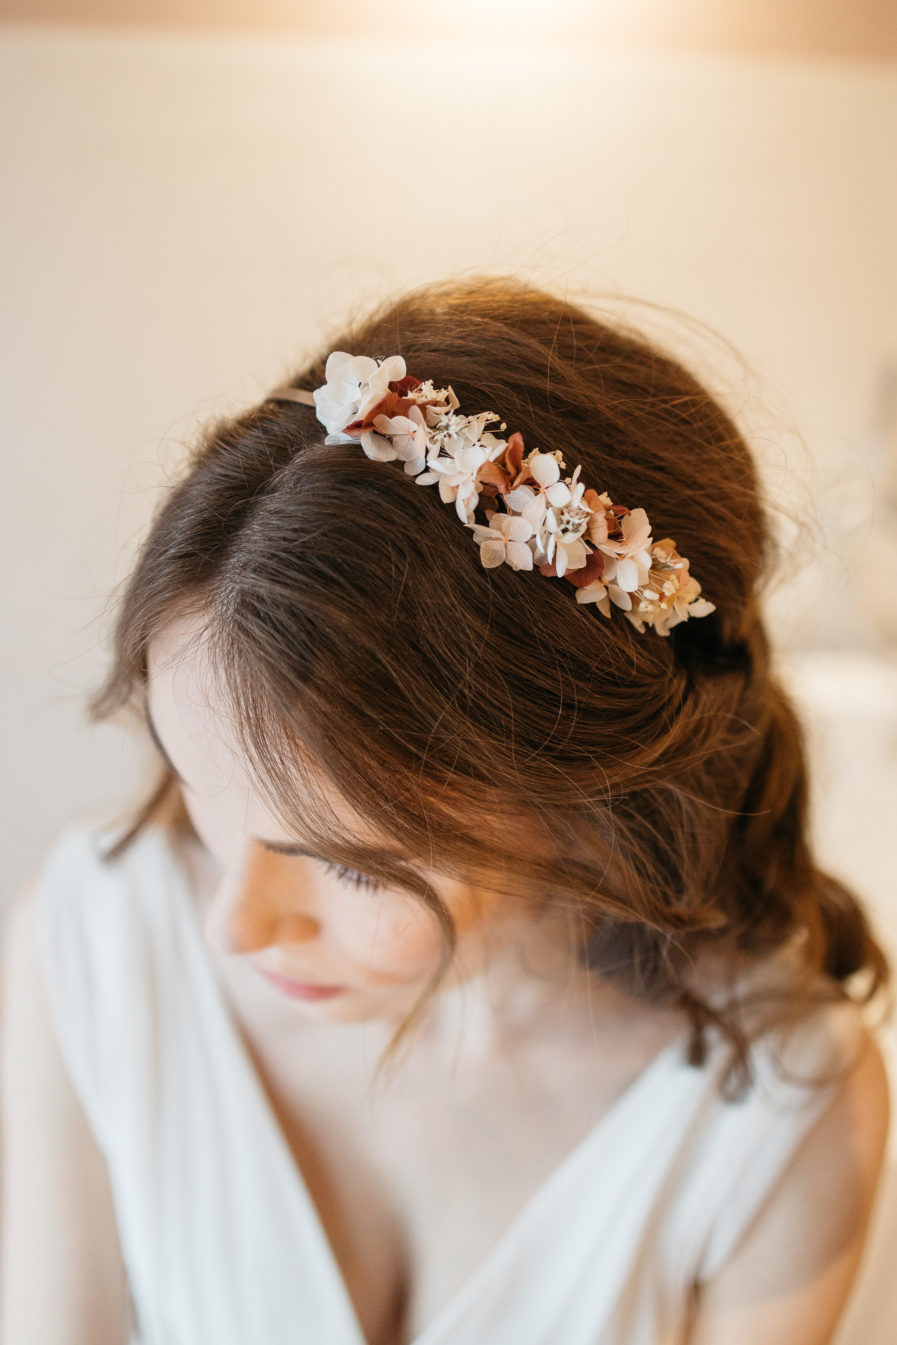 Headband en fleurs stabilisées Blush